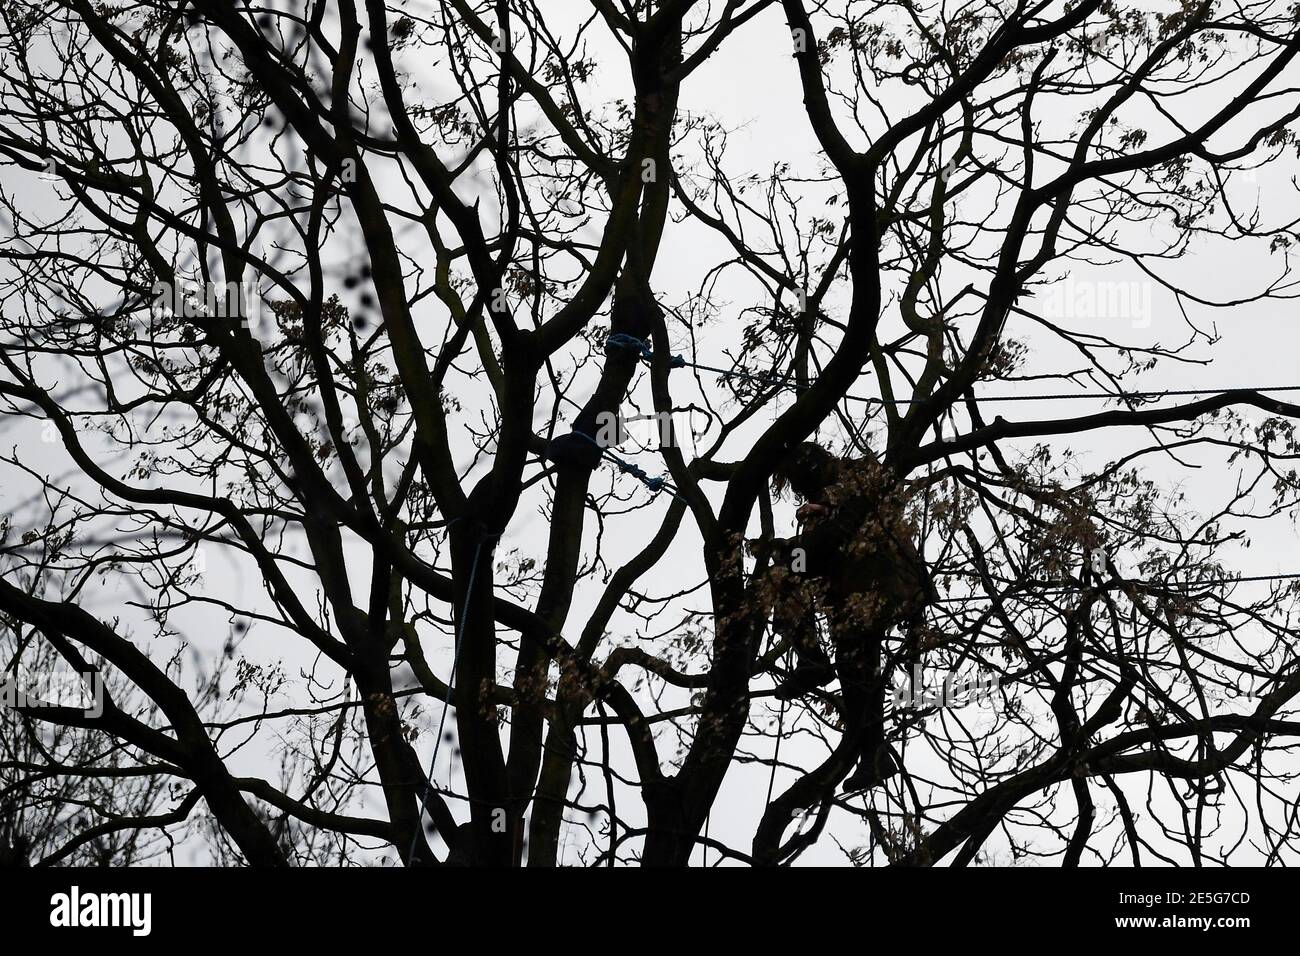 Un activista por la rebelión de extinción es visto en siluetas de un árbol en un campamento improvisado, mientras otros manifestantes ocupan túneles bajo Euston Square Gardens para protestar contra el ferrocarril de alta velocidad HS2, en Londres, Gran Bretaña 28 de enero de 2021. REUTERS/Toby Melville Foto de stock